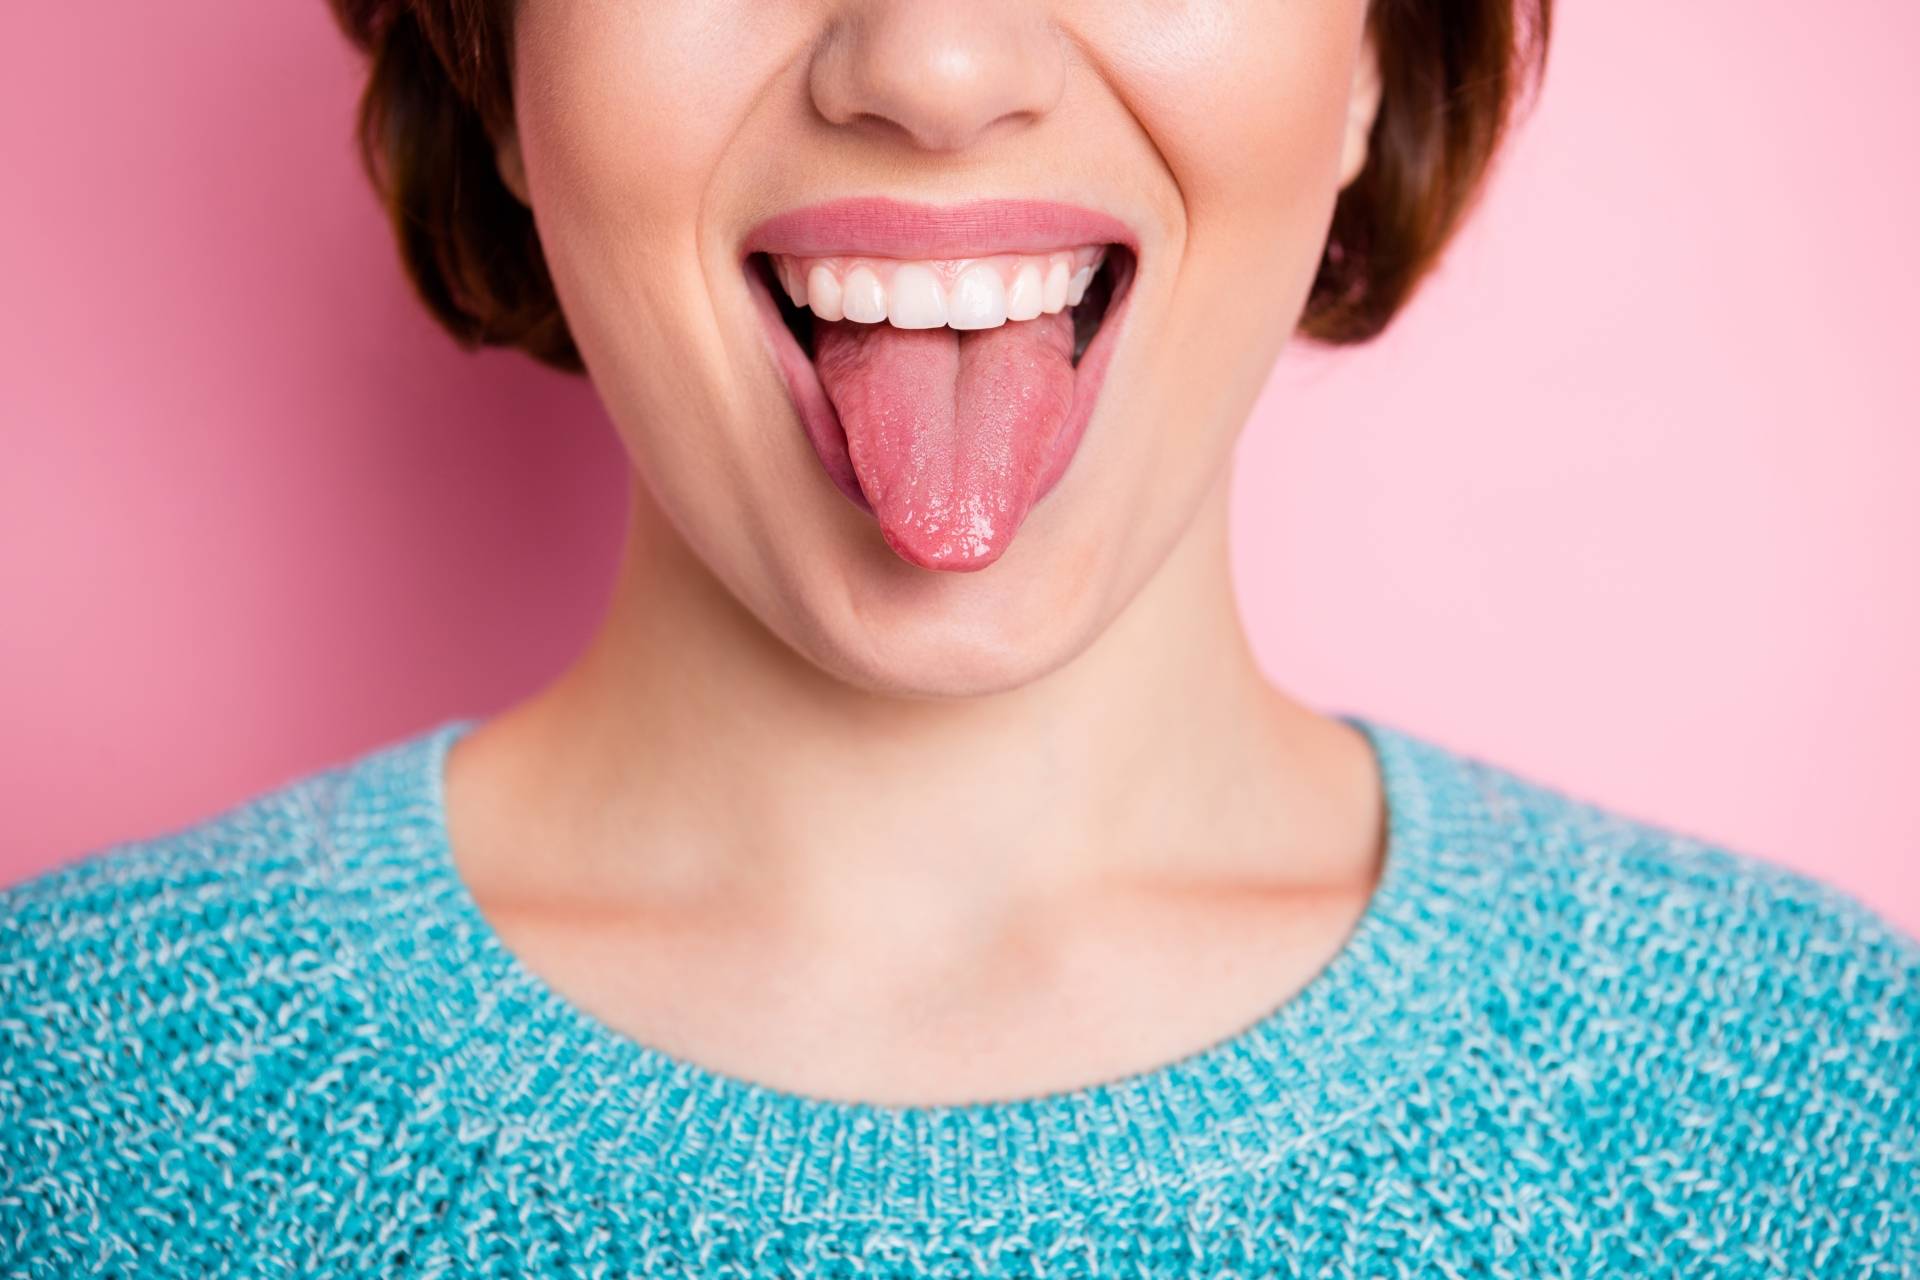 O czym świadczą zmiany na języku? Młoda dziewczyna w niebieskim swetrze wystawia język. Stoi na tle różowej ściany. 